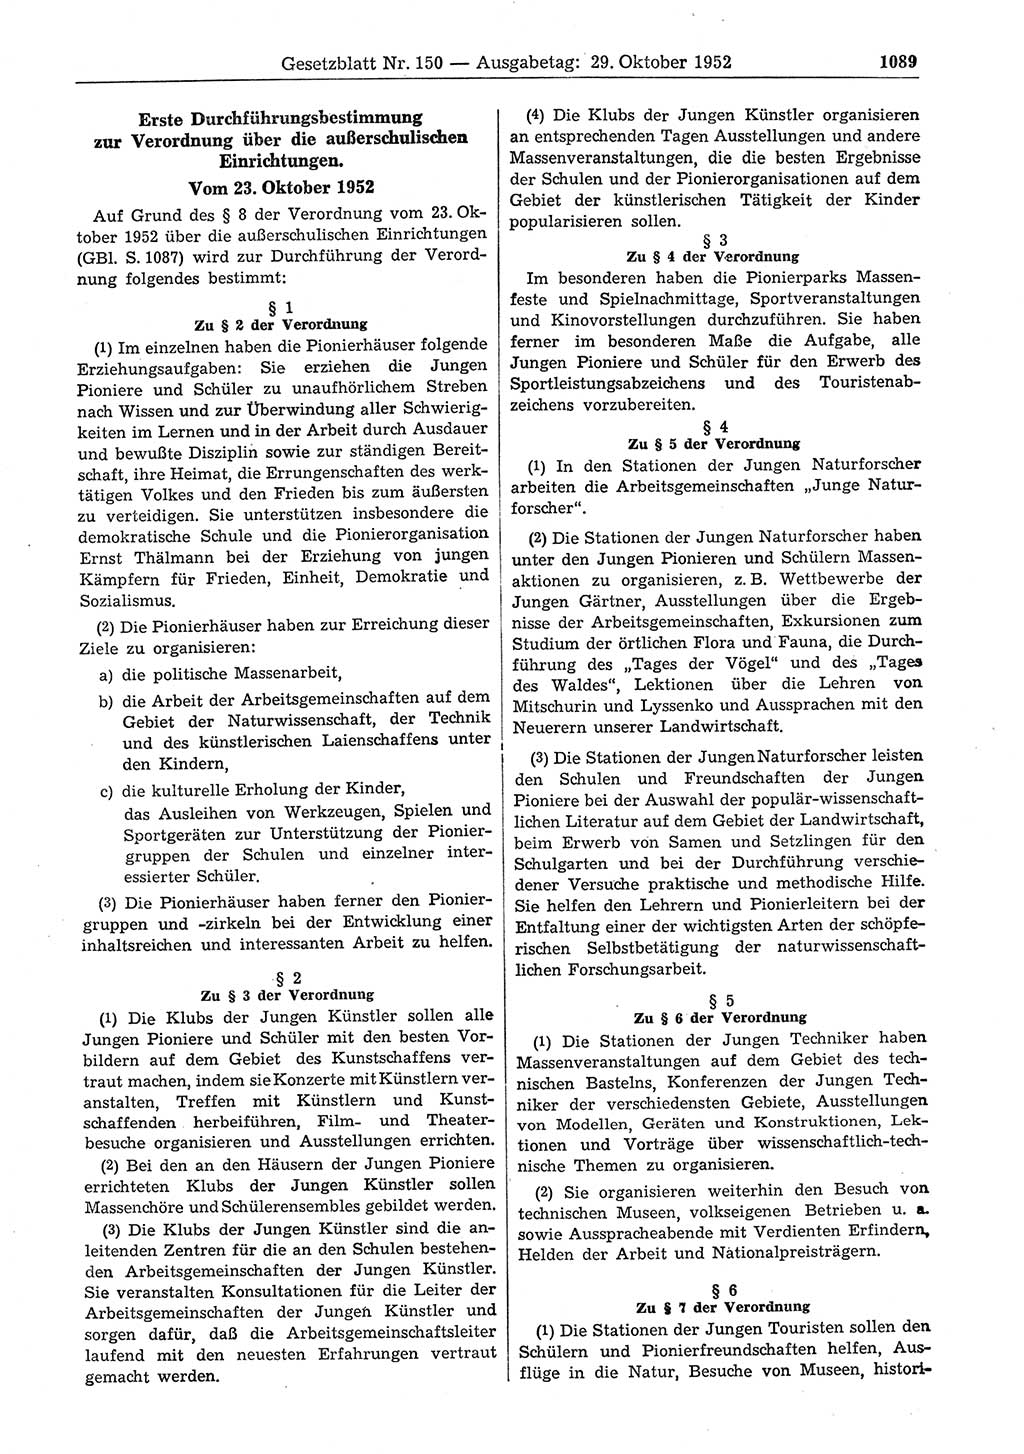 Gesetzblatt (GBl.) der Deutschen Demokratischen Republik (DDR) 1952, Seite 1089 (GBl. DDR 1952, S. 1089)